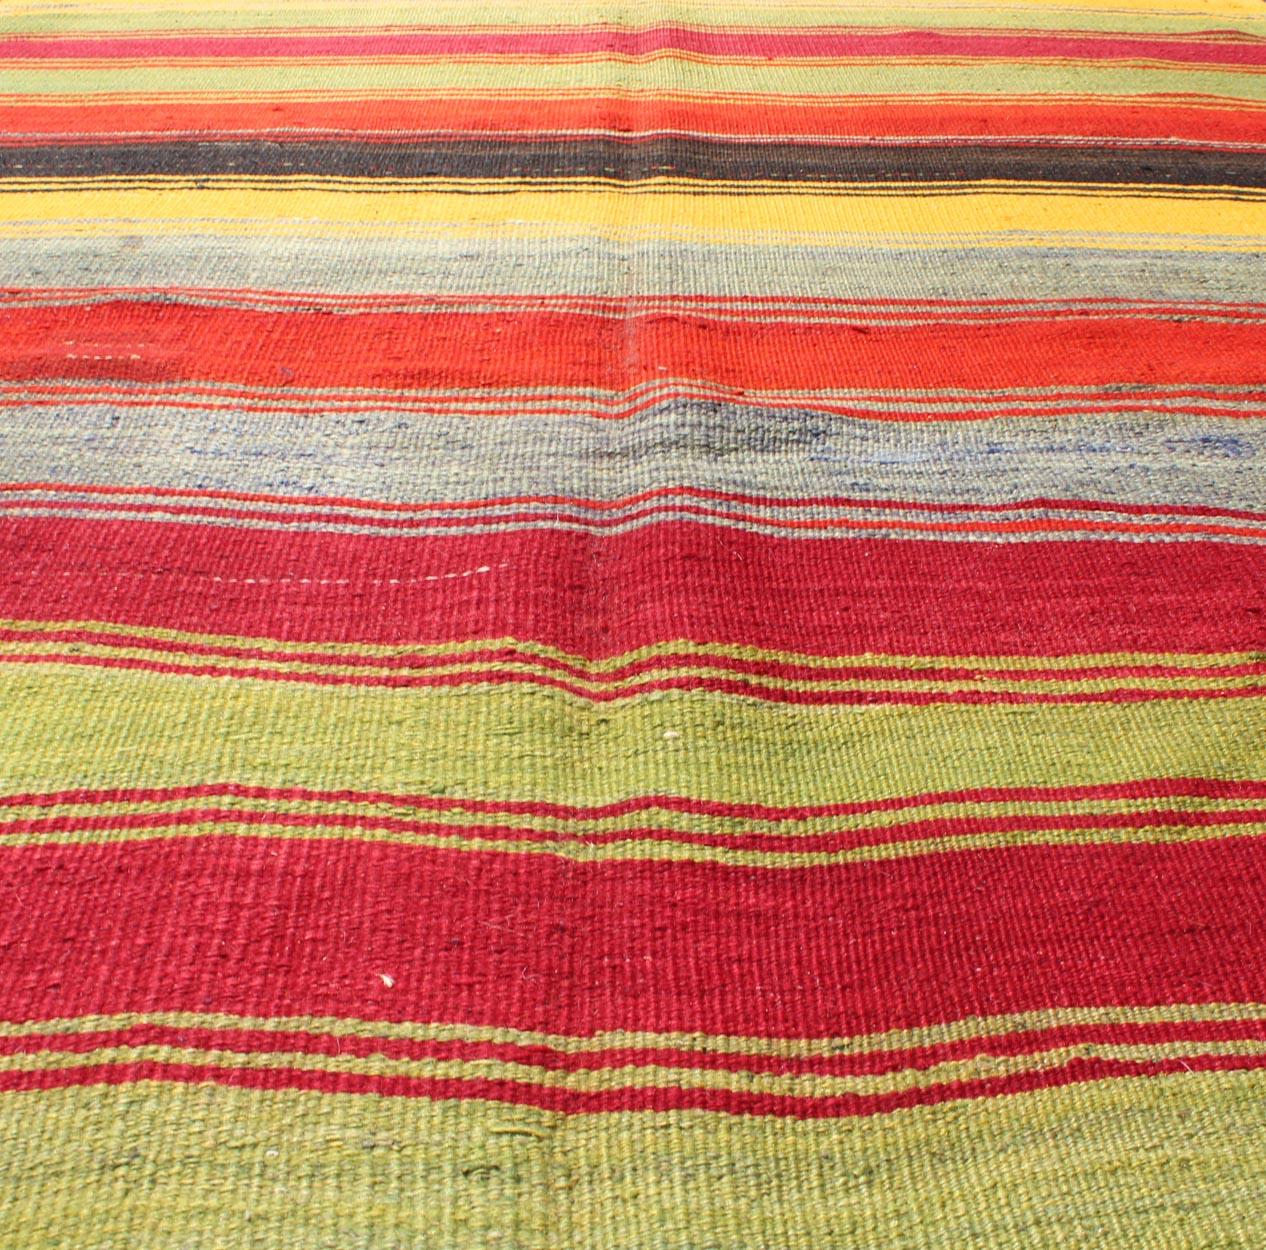 Colorful Vintage Turkish Kilim Rug with Subtle Tribal Shapes and Stripes Design For Sale 5